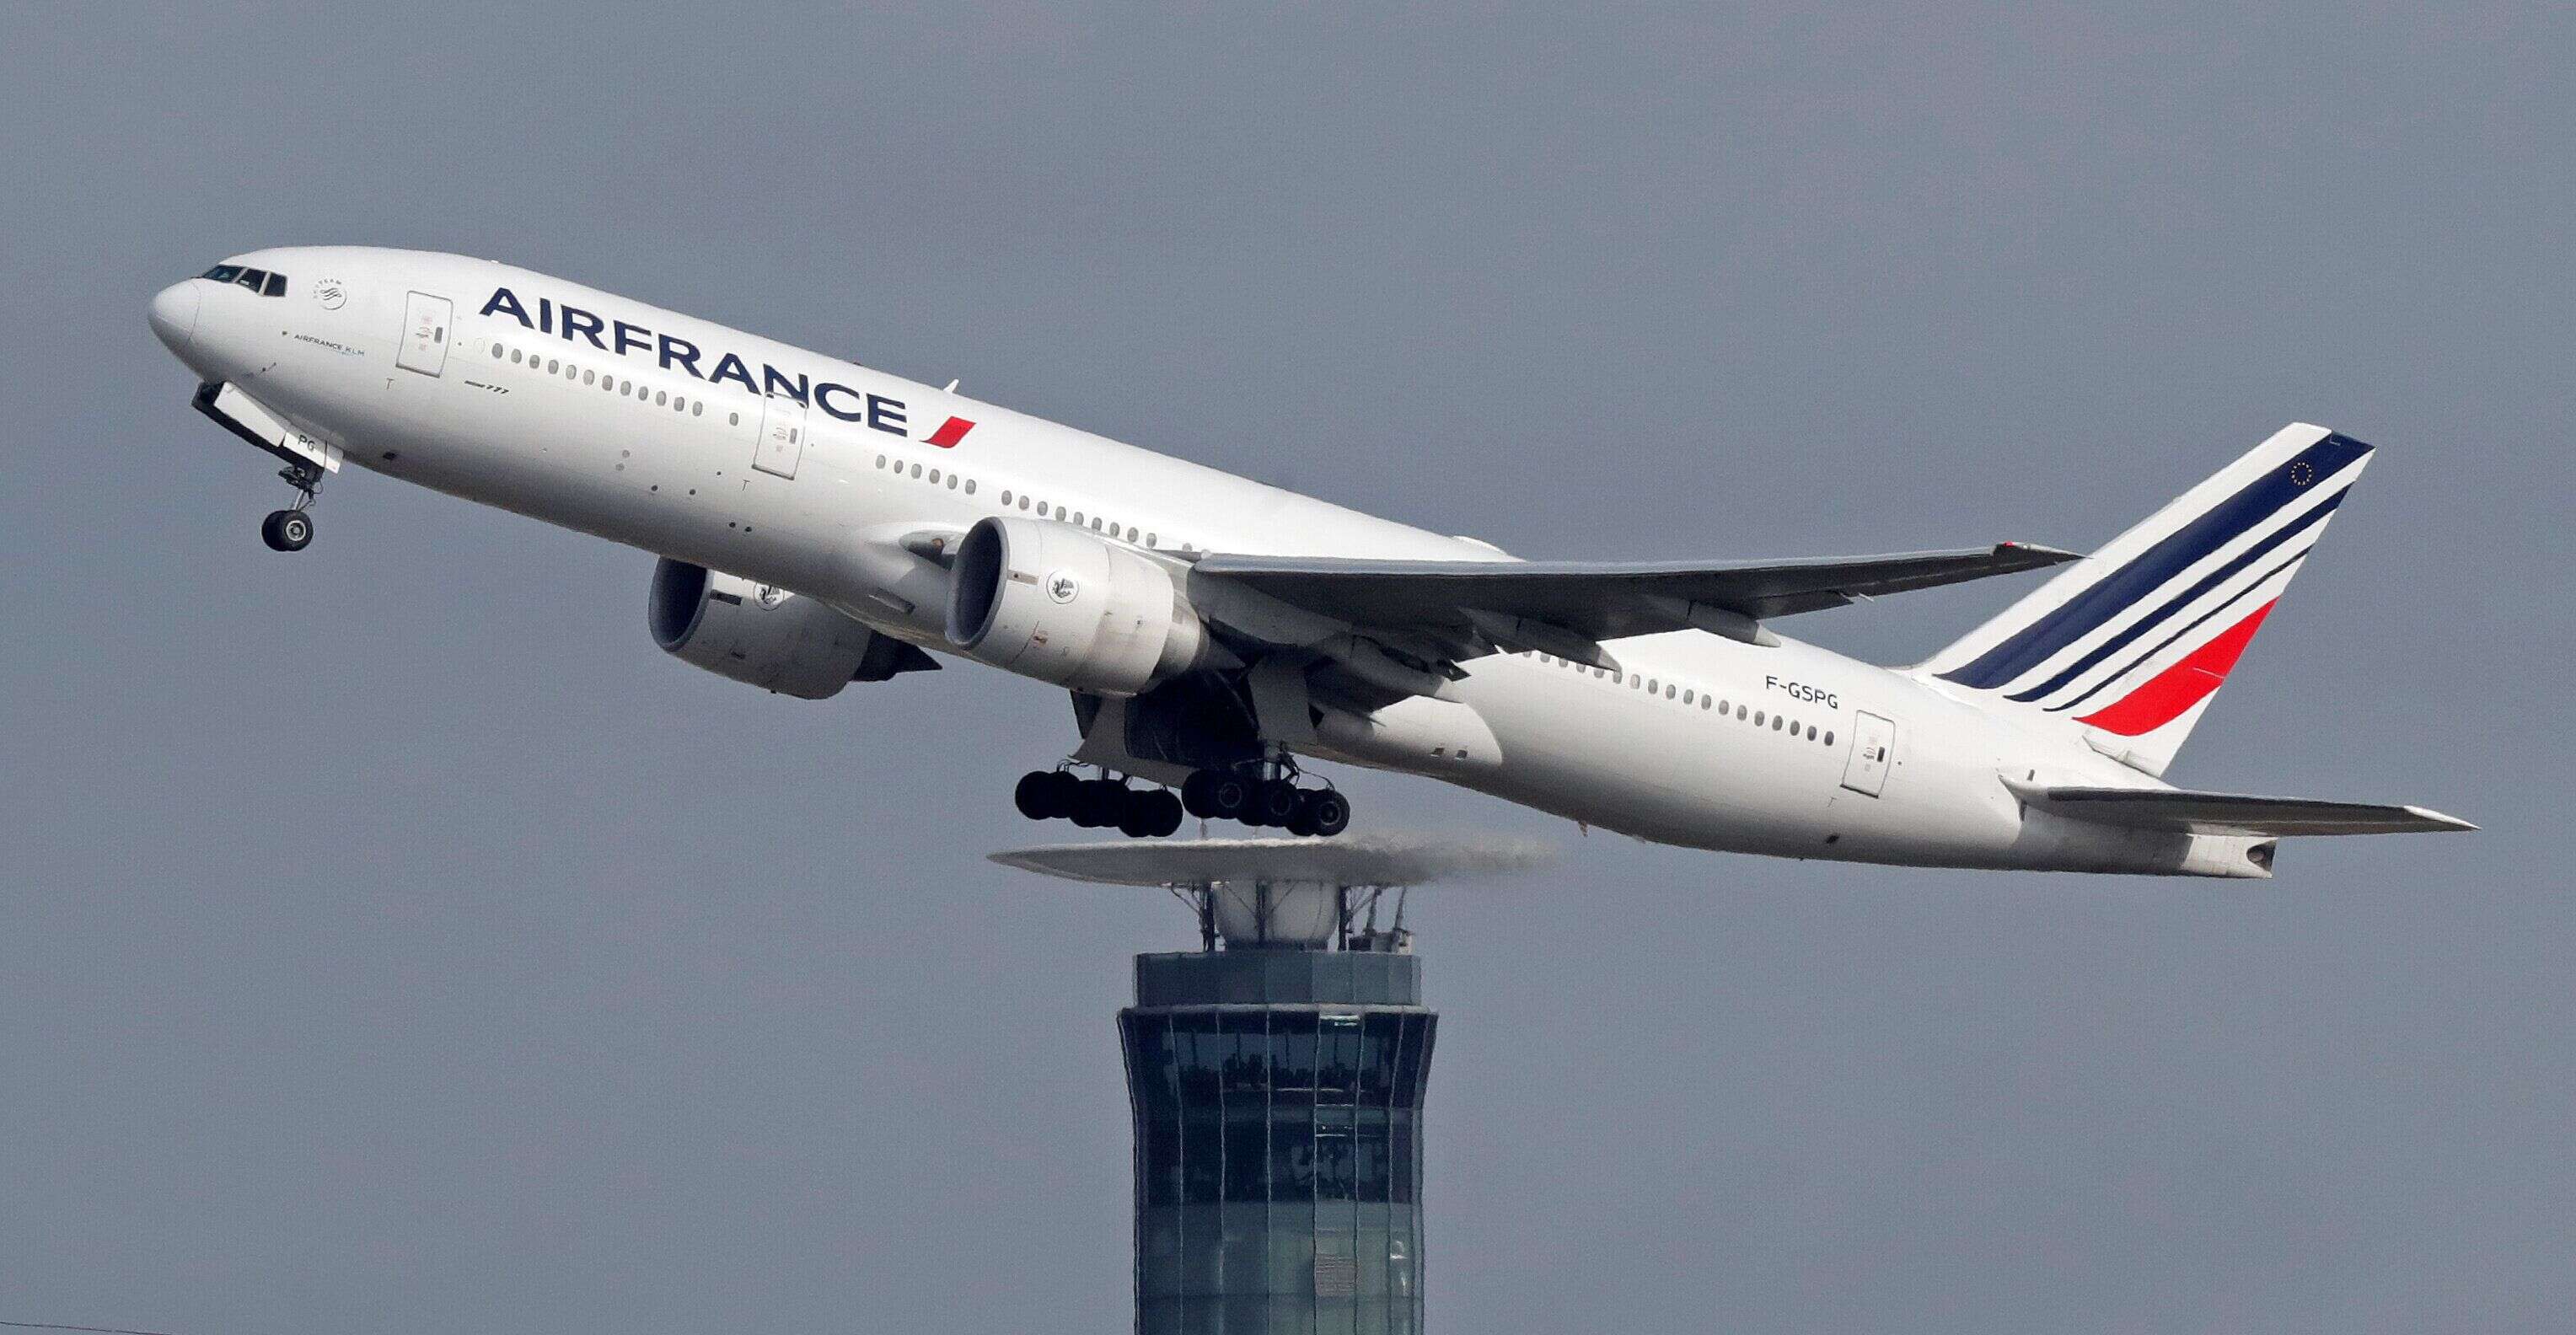 Un avion d'Air France Pékin-Paris atterrit en urgence après 